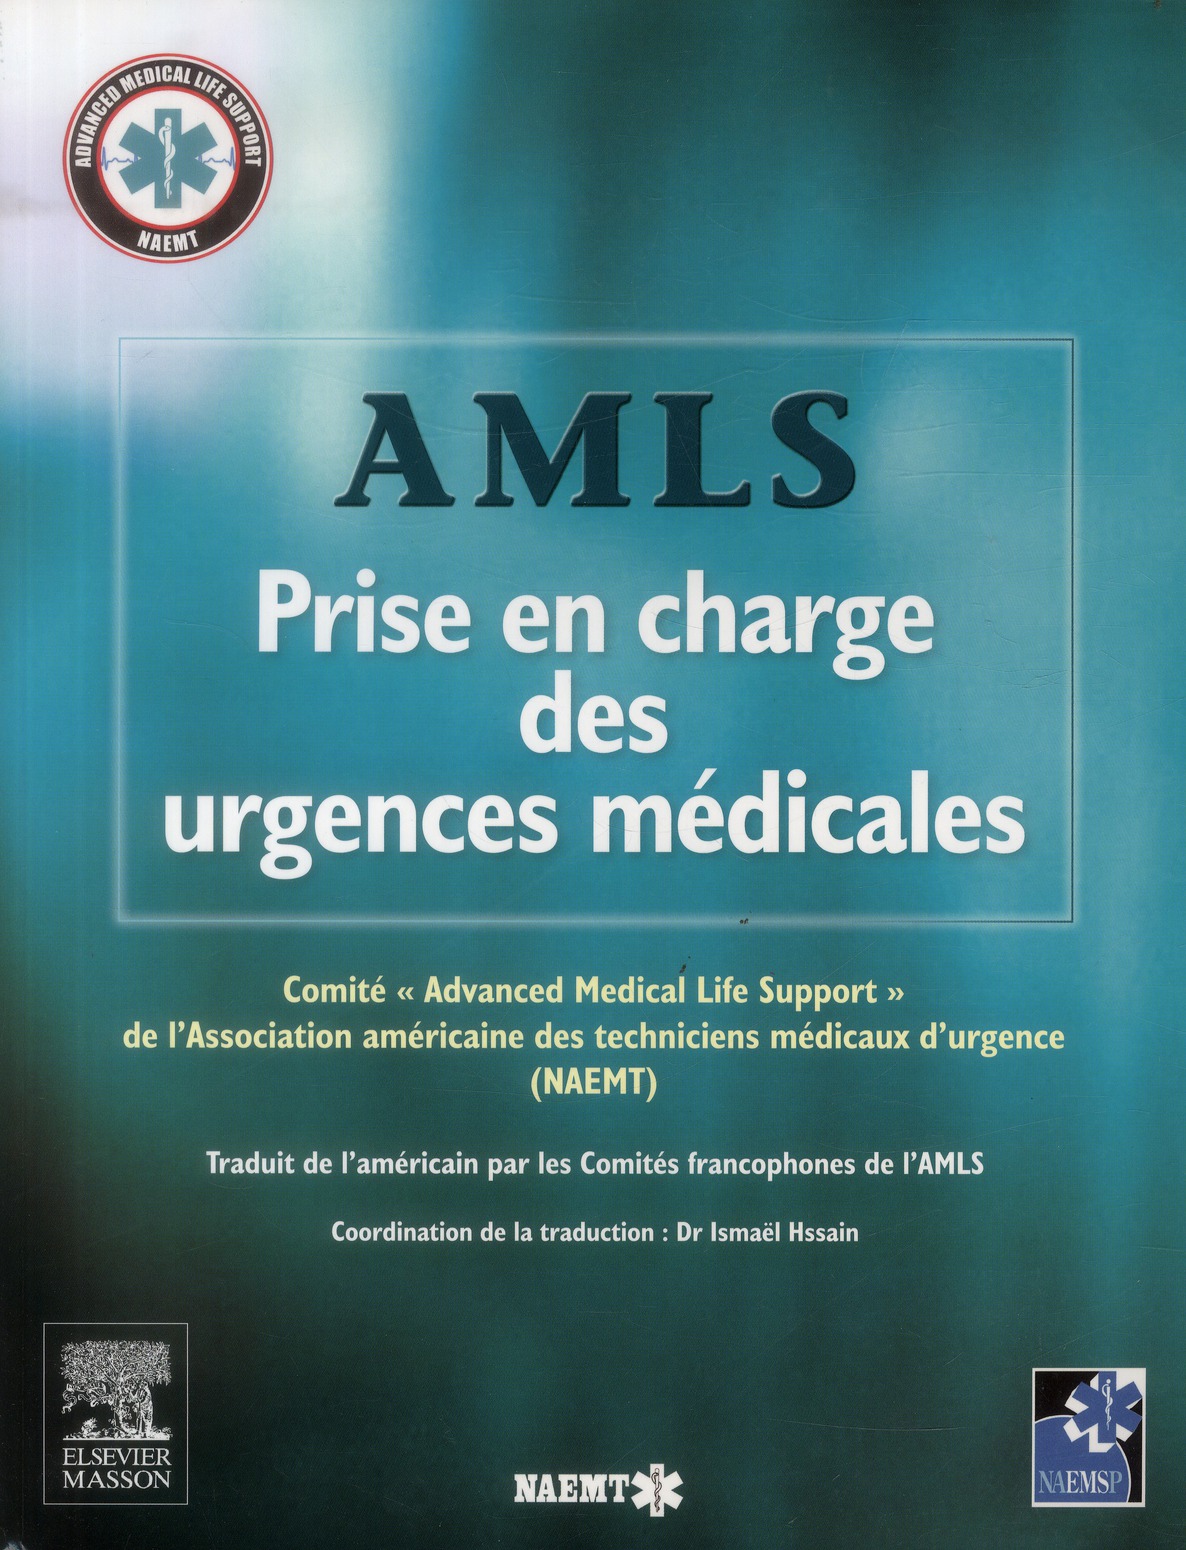 AMLS, PRISE EN CHARGE DES URGENCES MEDICALES